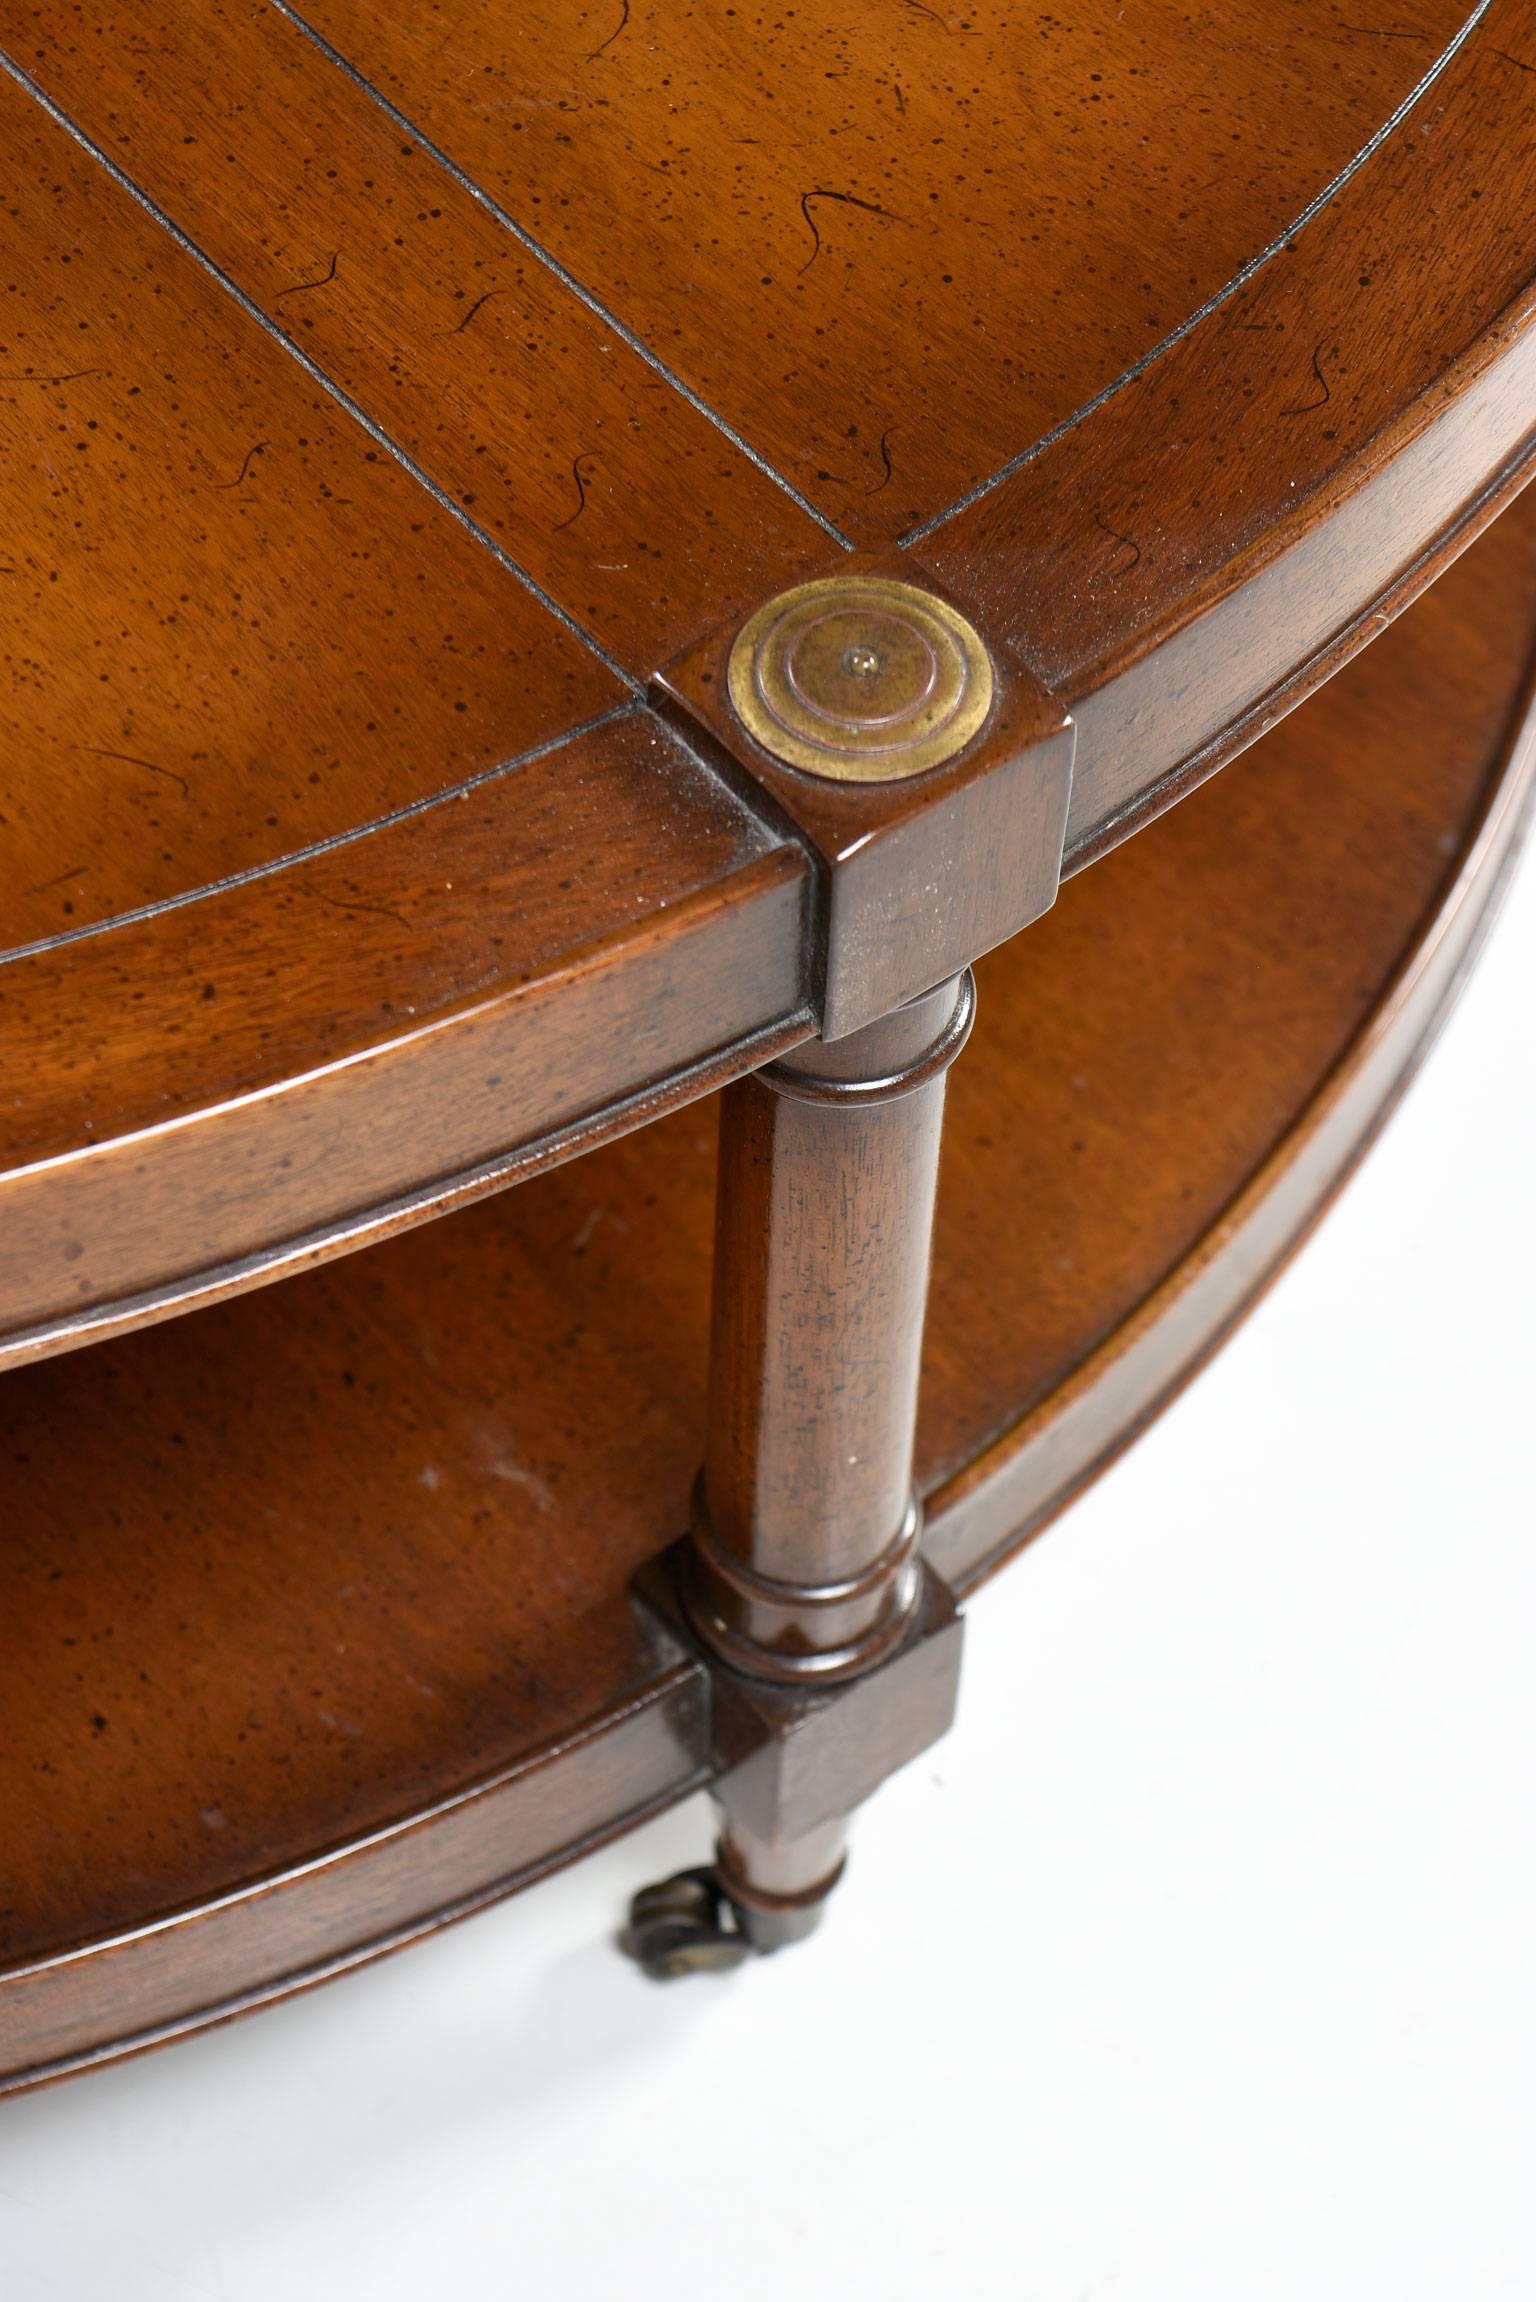 round mahogany coffee table